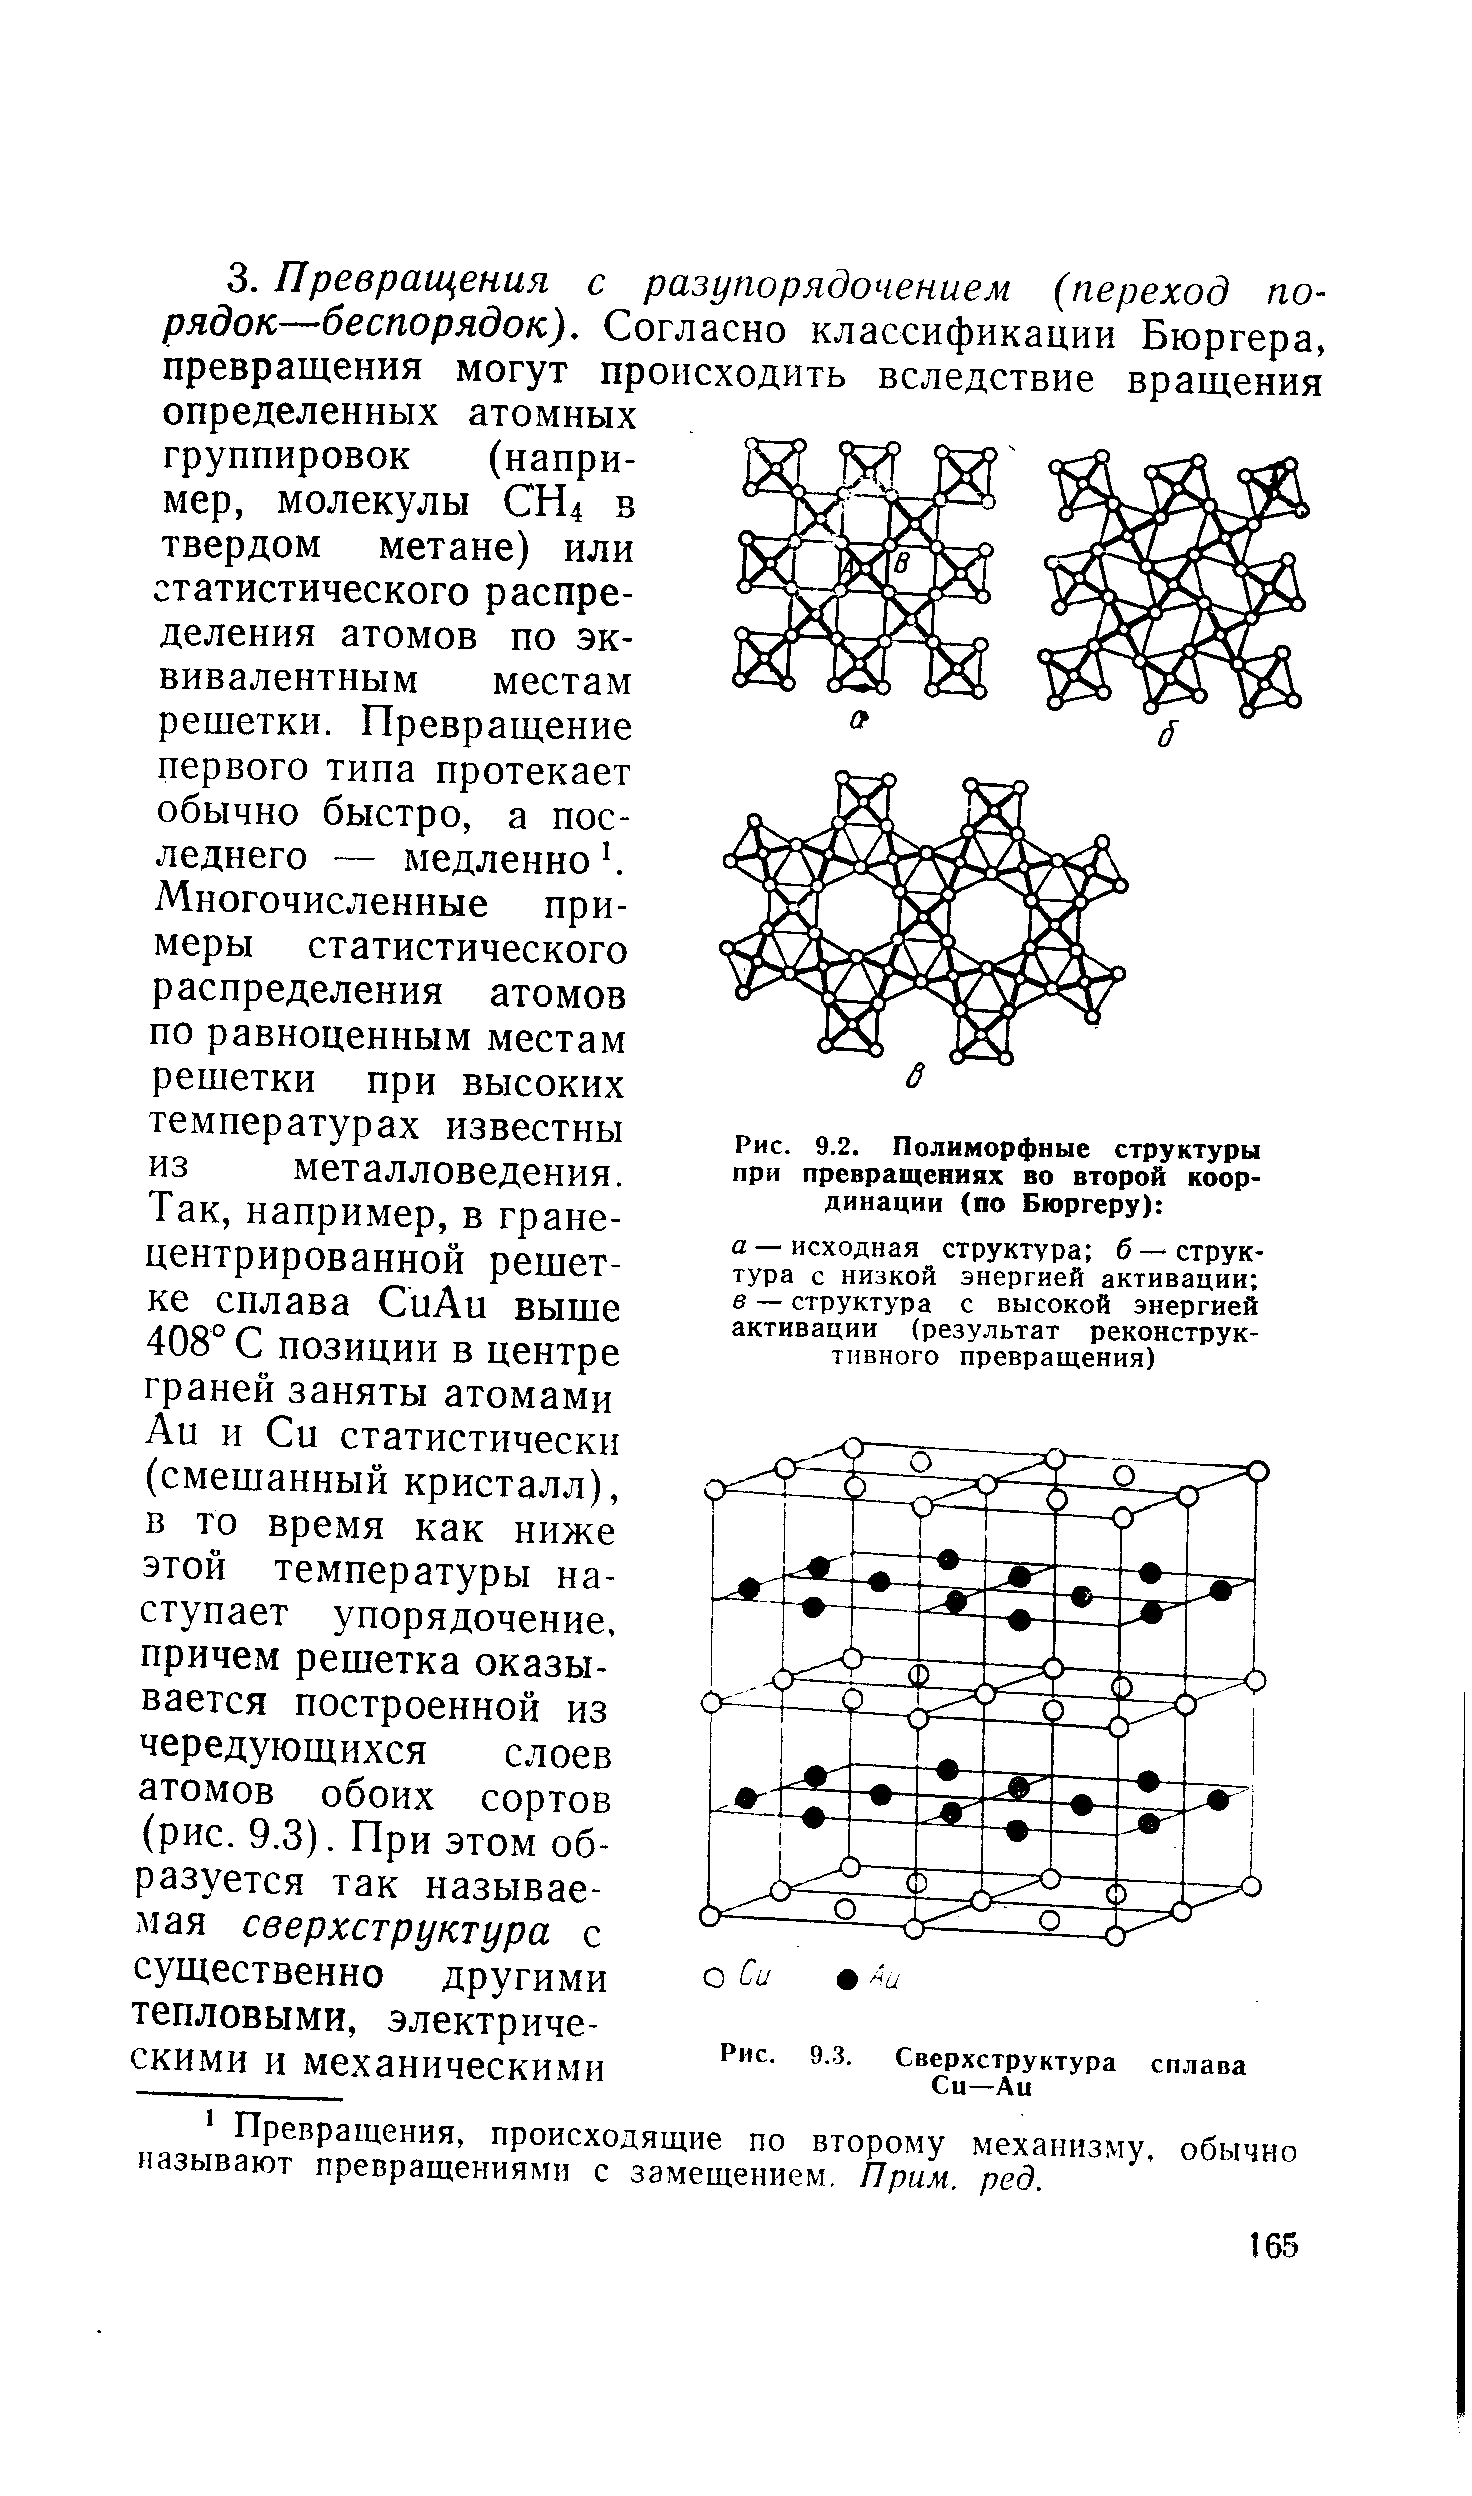 Рис. 9.2. Полиморфные структуры при превращениях во второй координации (по Бюргеру) 
